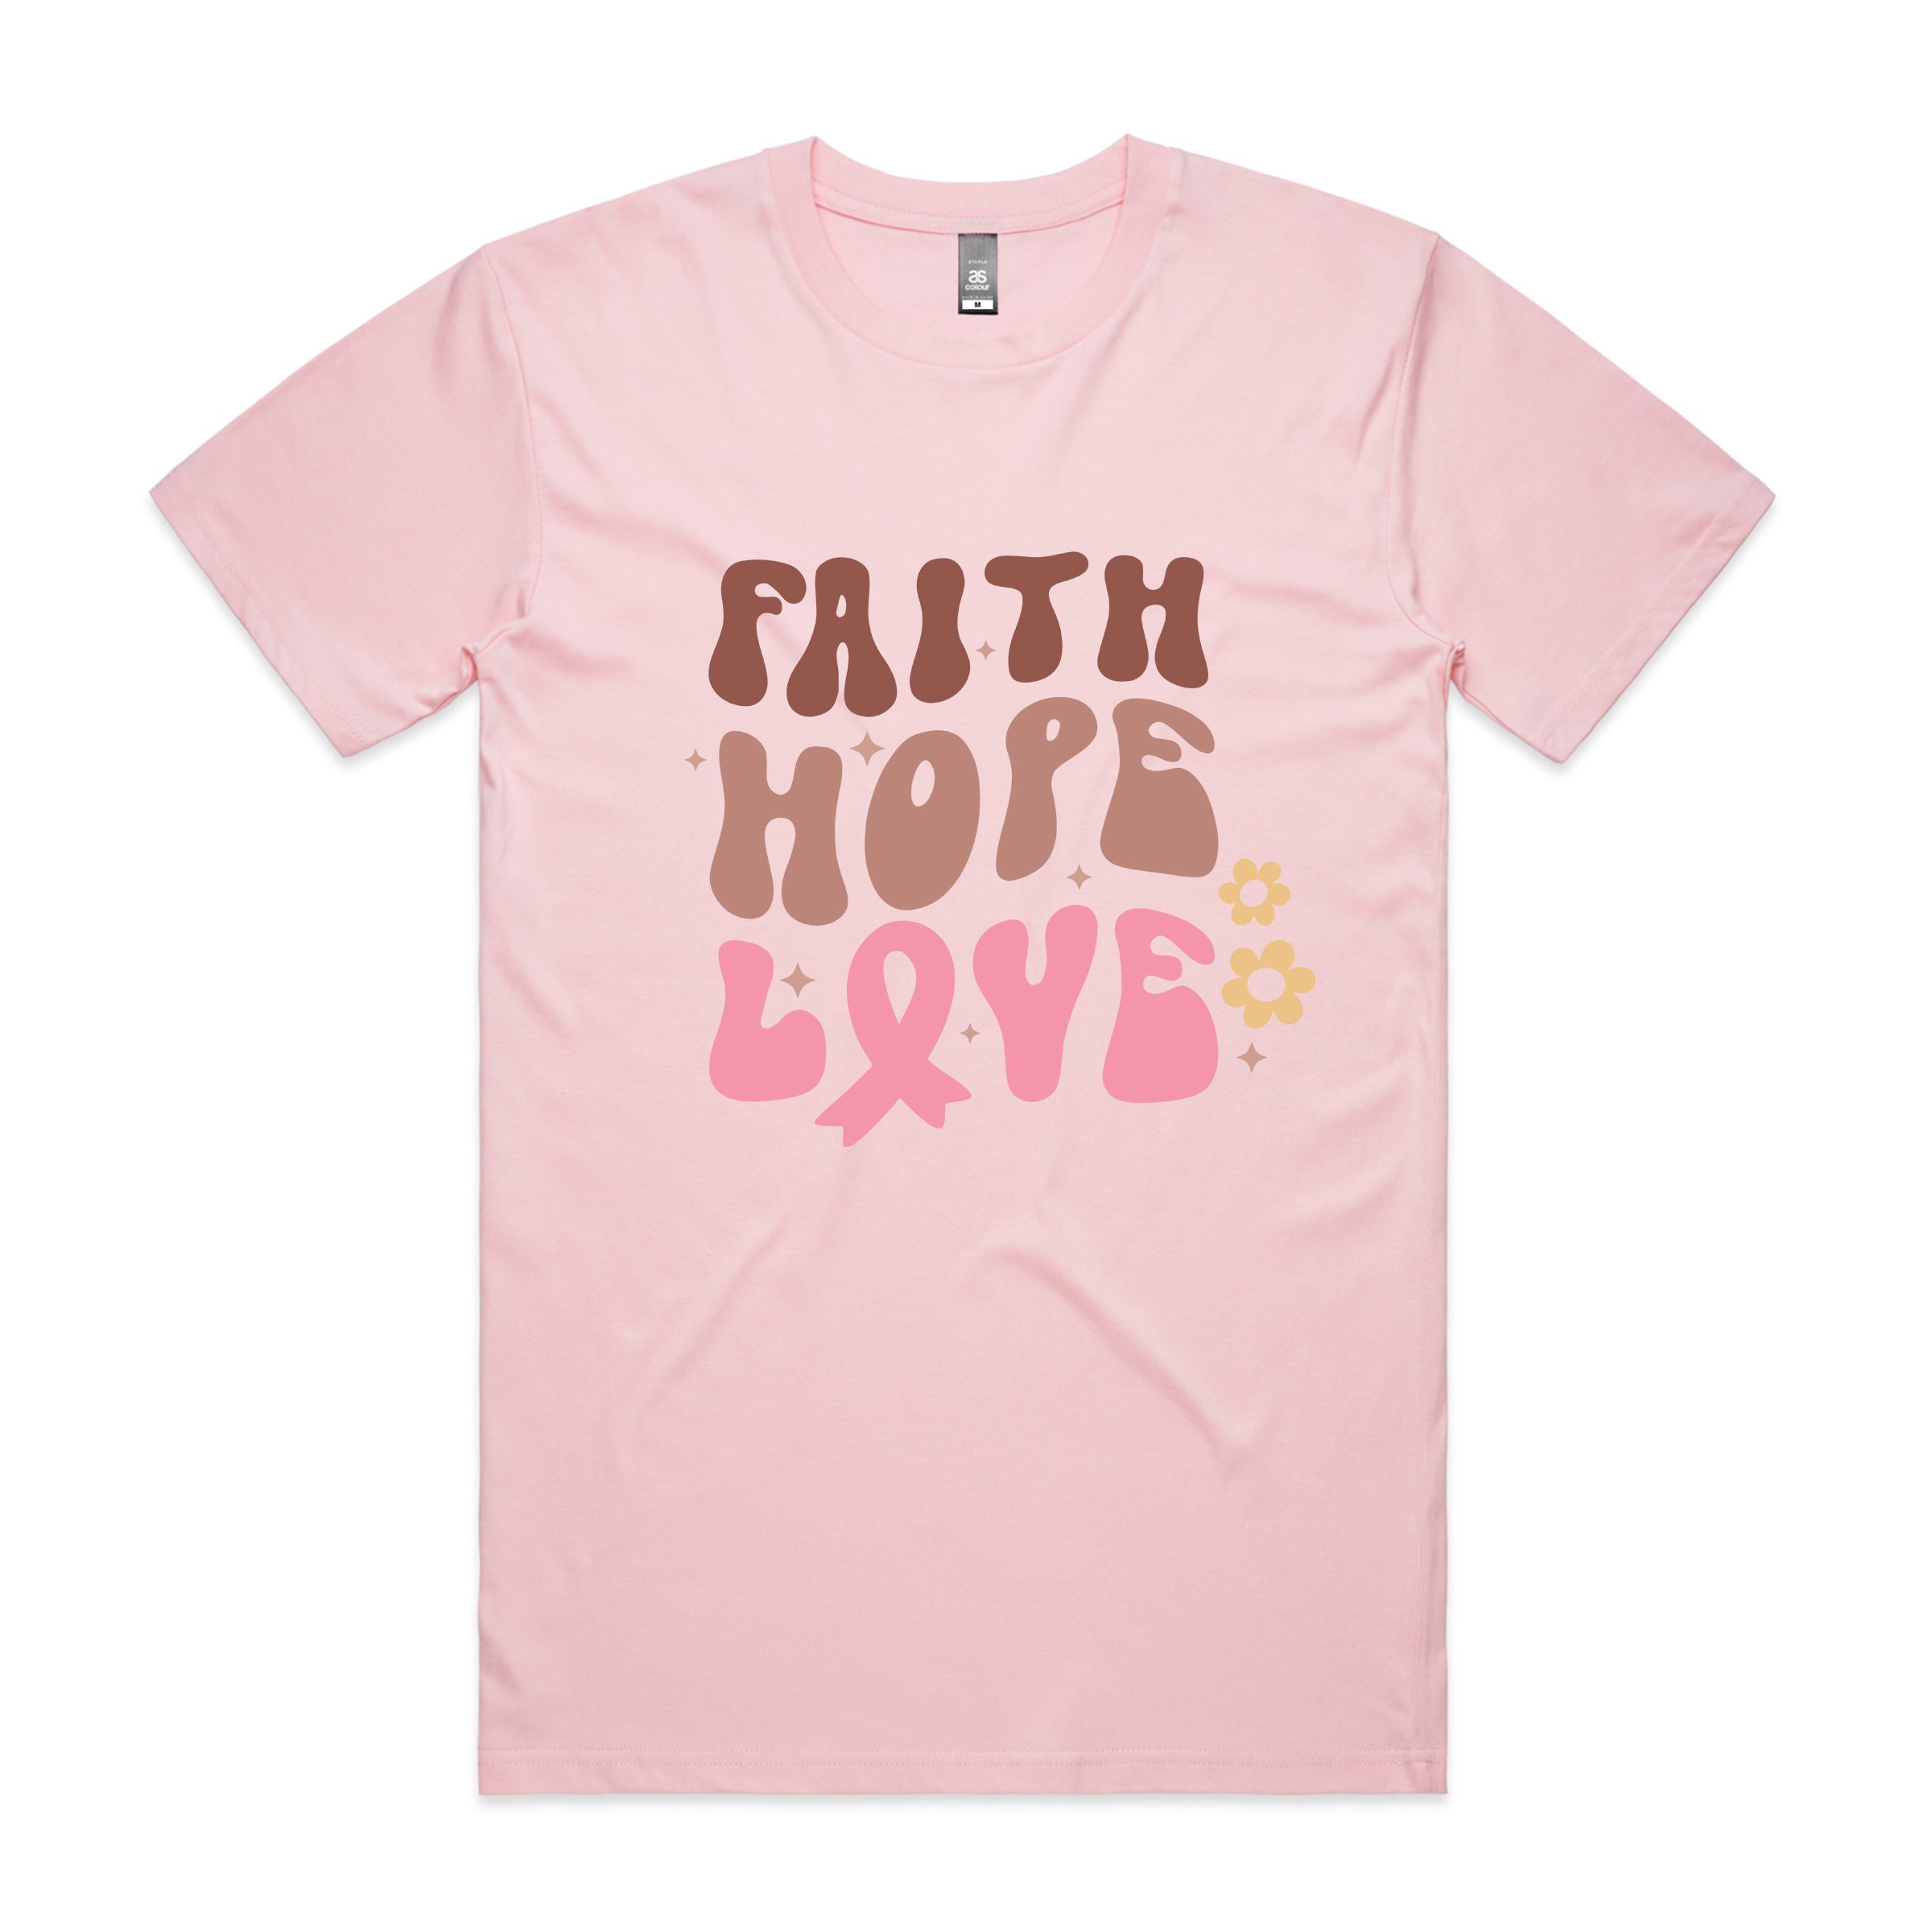 FAITH HOPE LOVE TSHIRT A029